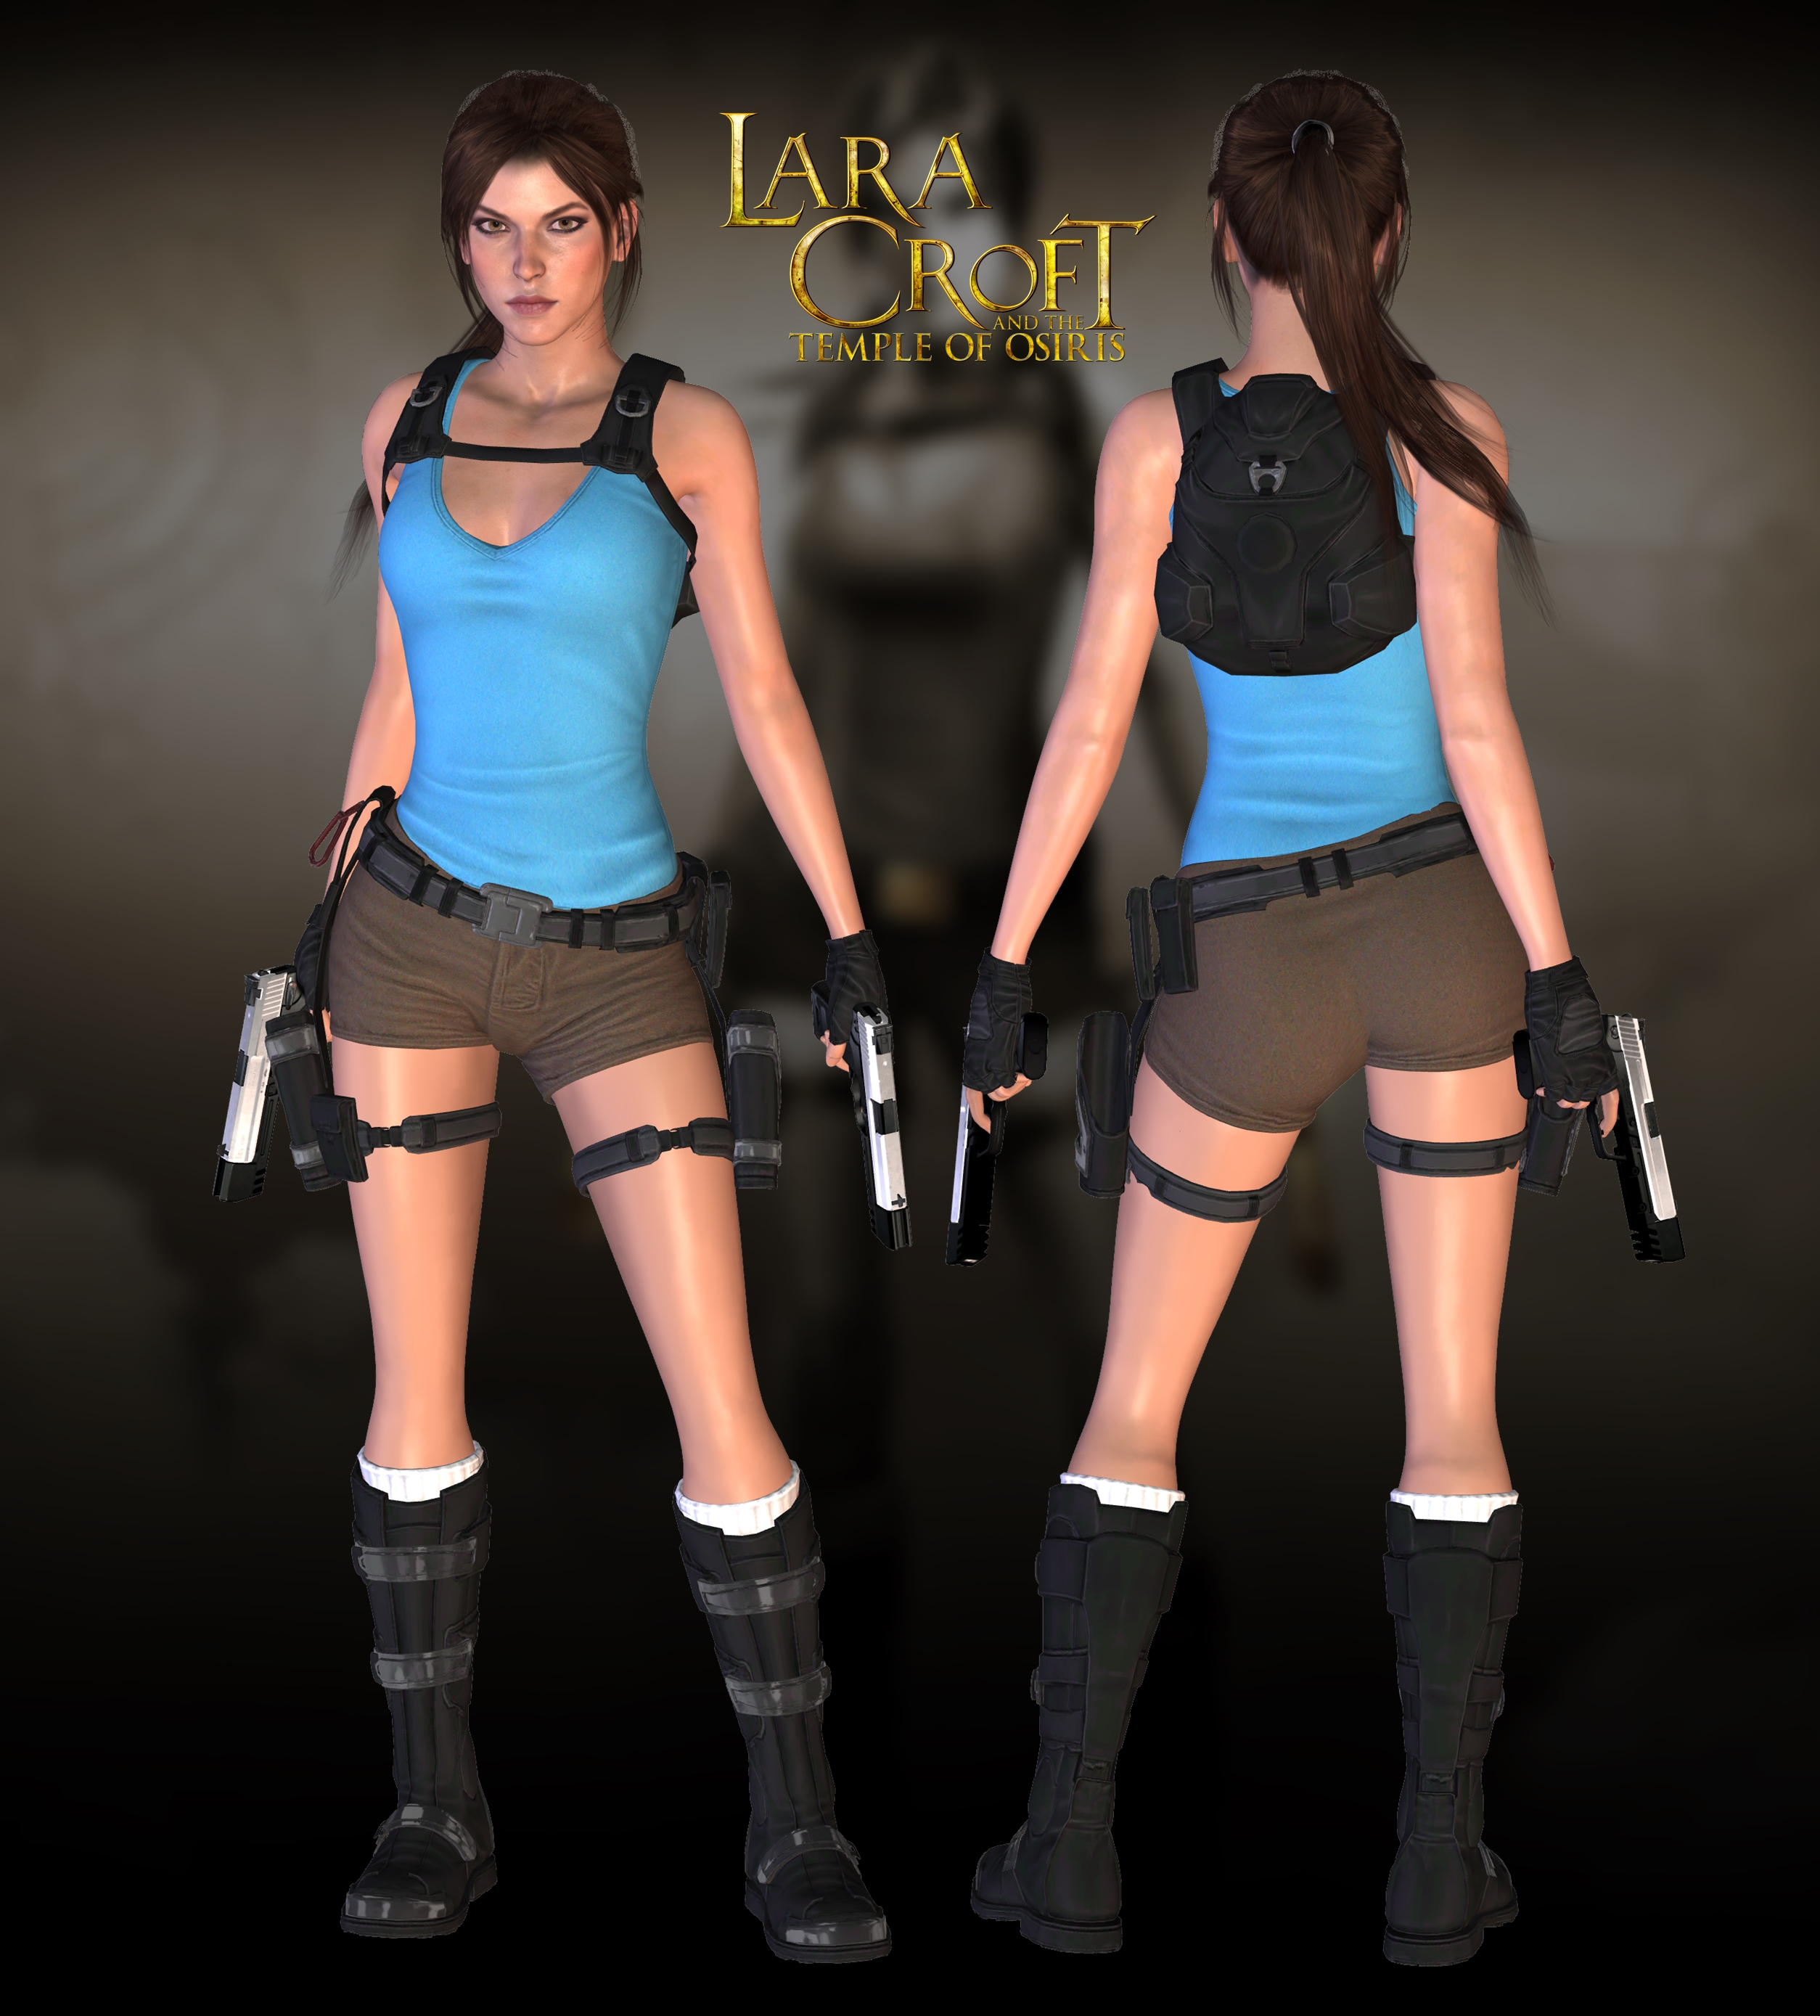 Lara croft and the temple of osiris в стиме фото 97